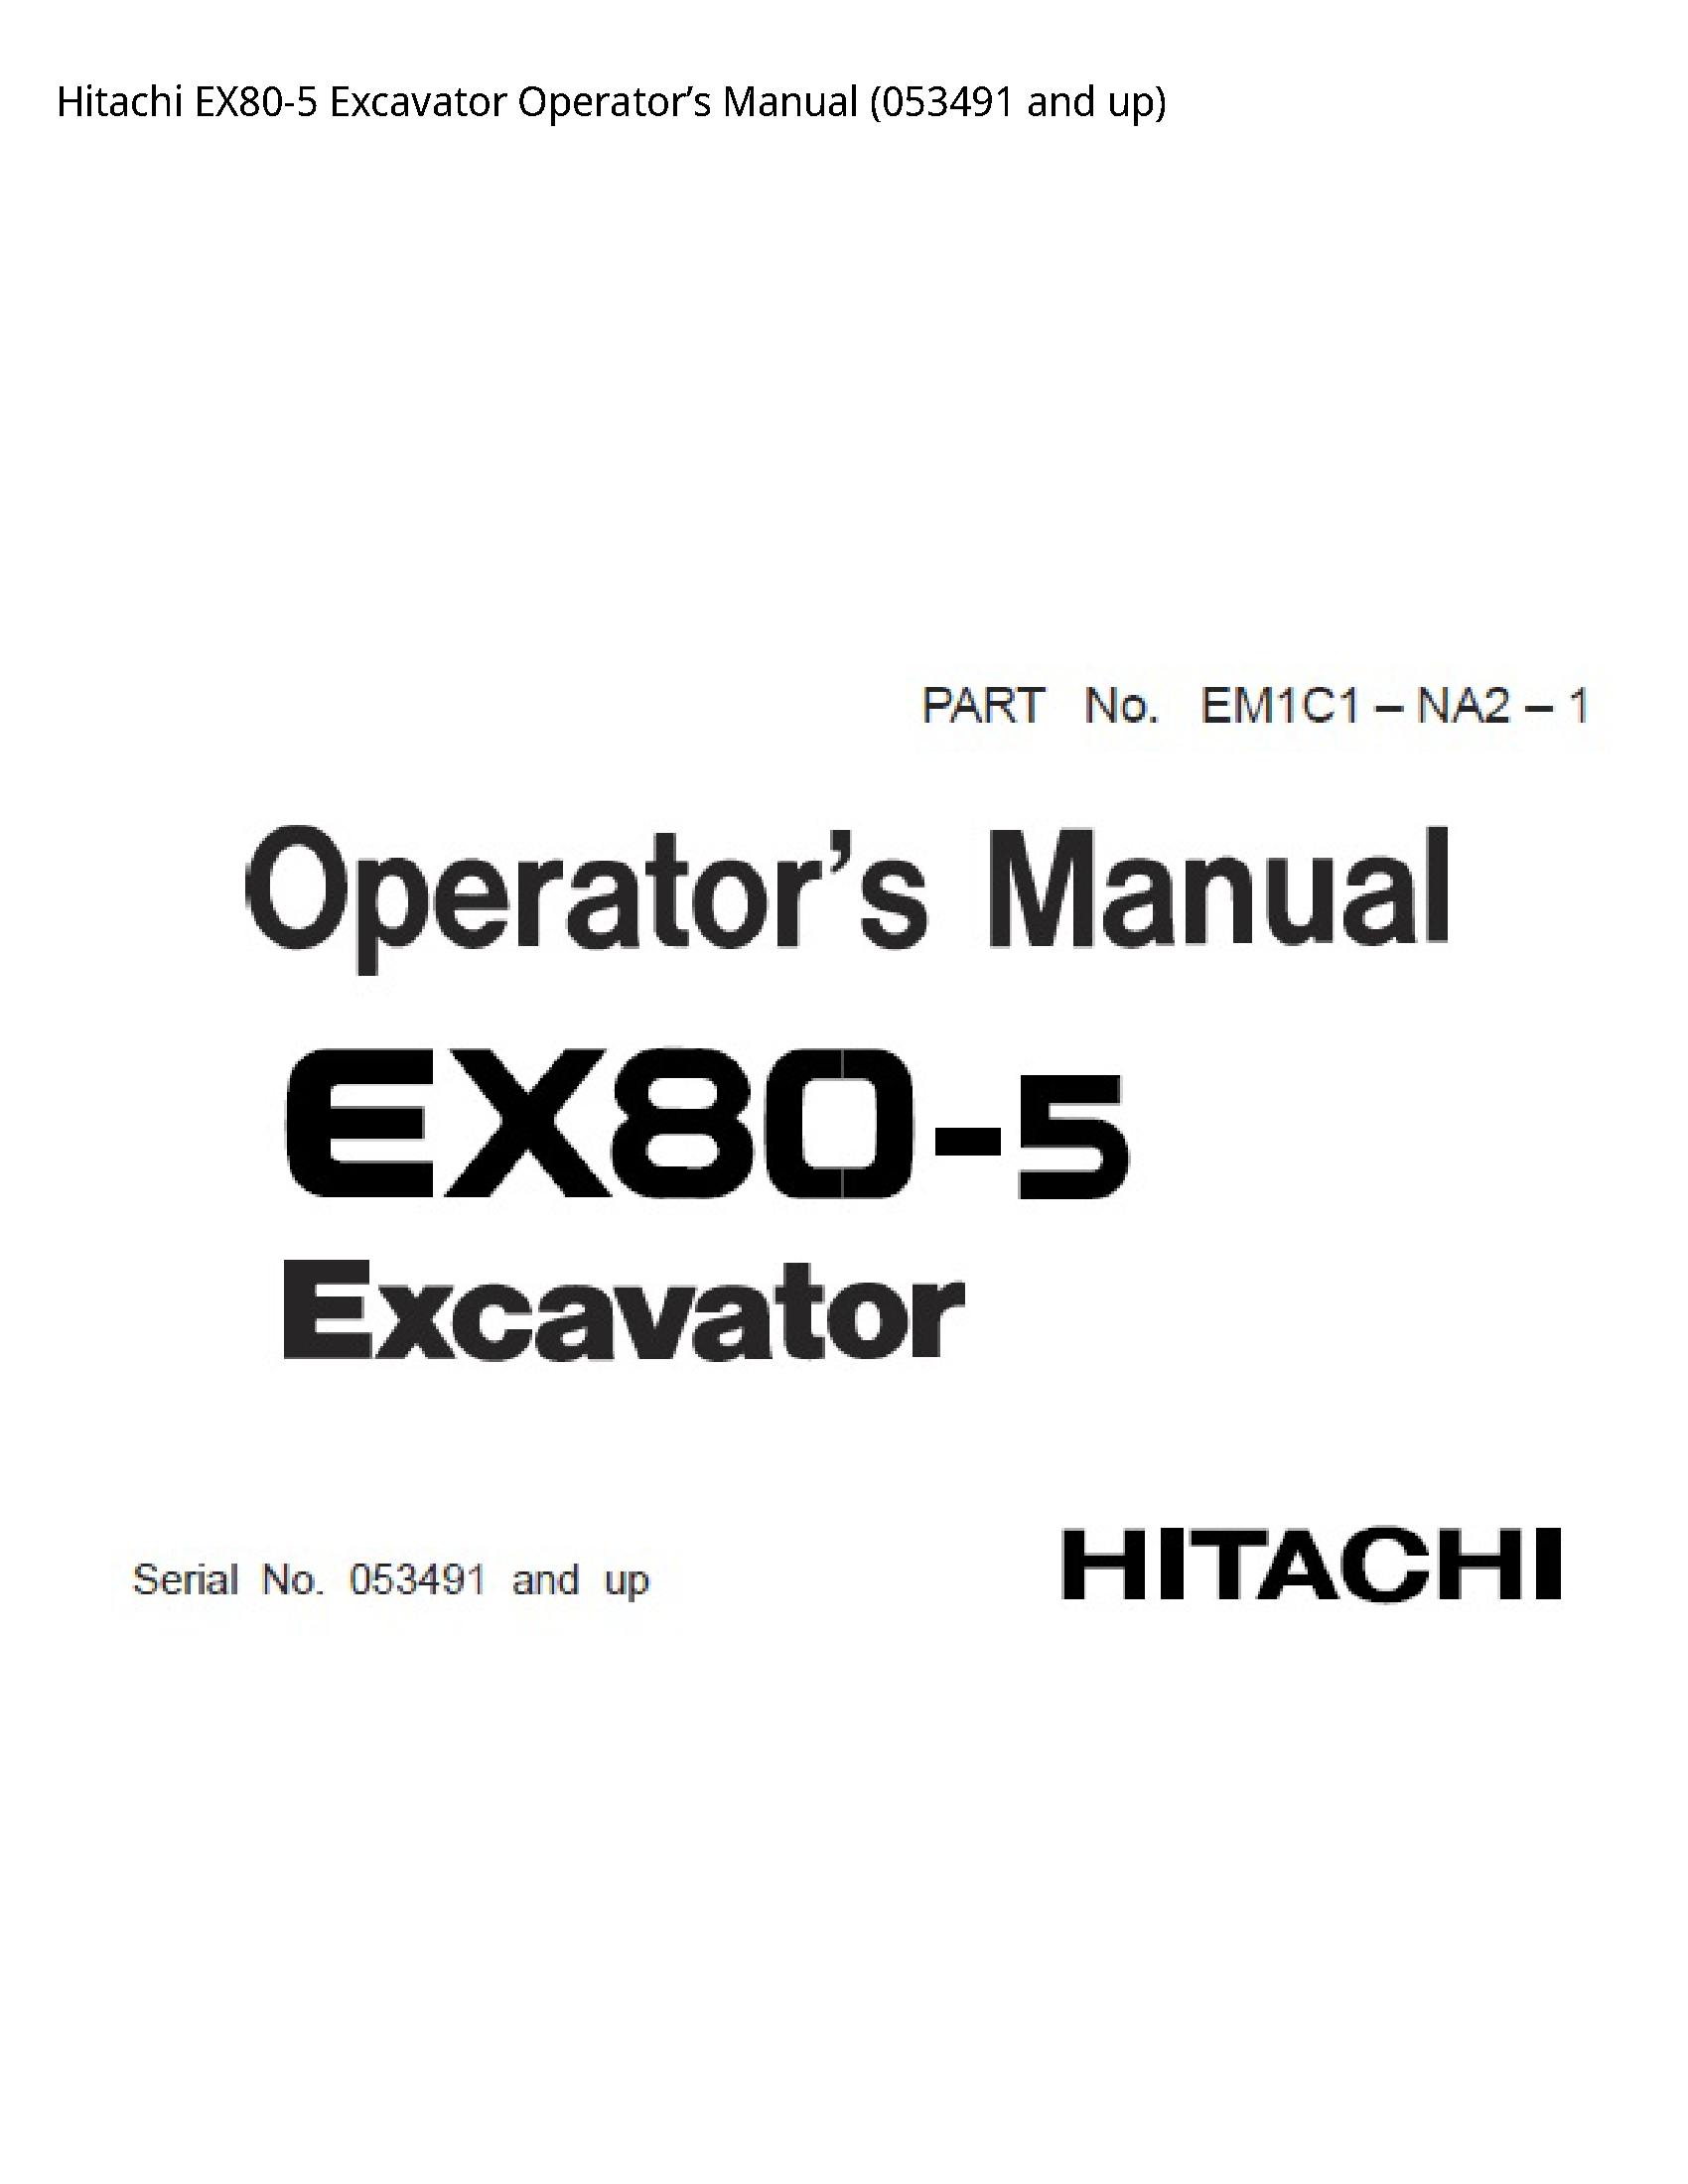 Hitachi EX80-5 Excavator Operator’s manual